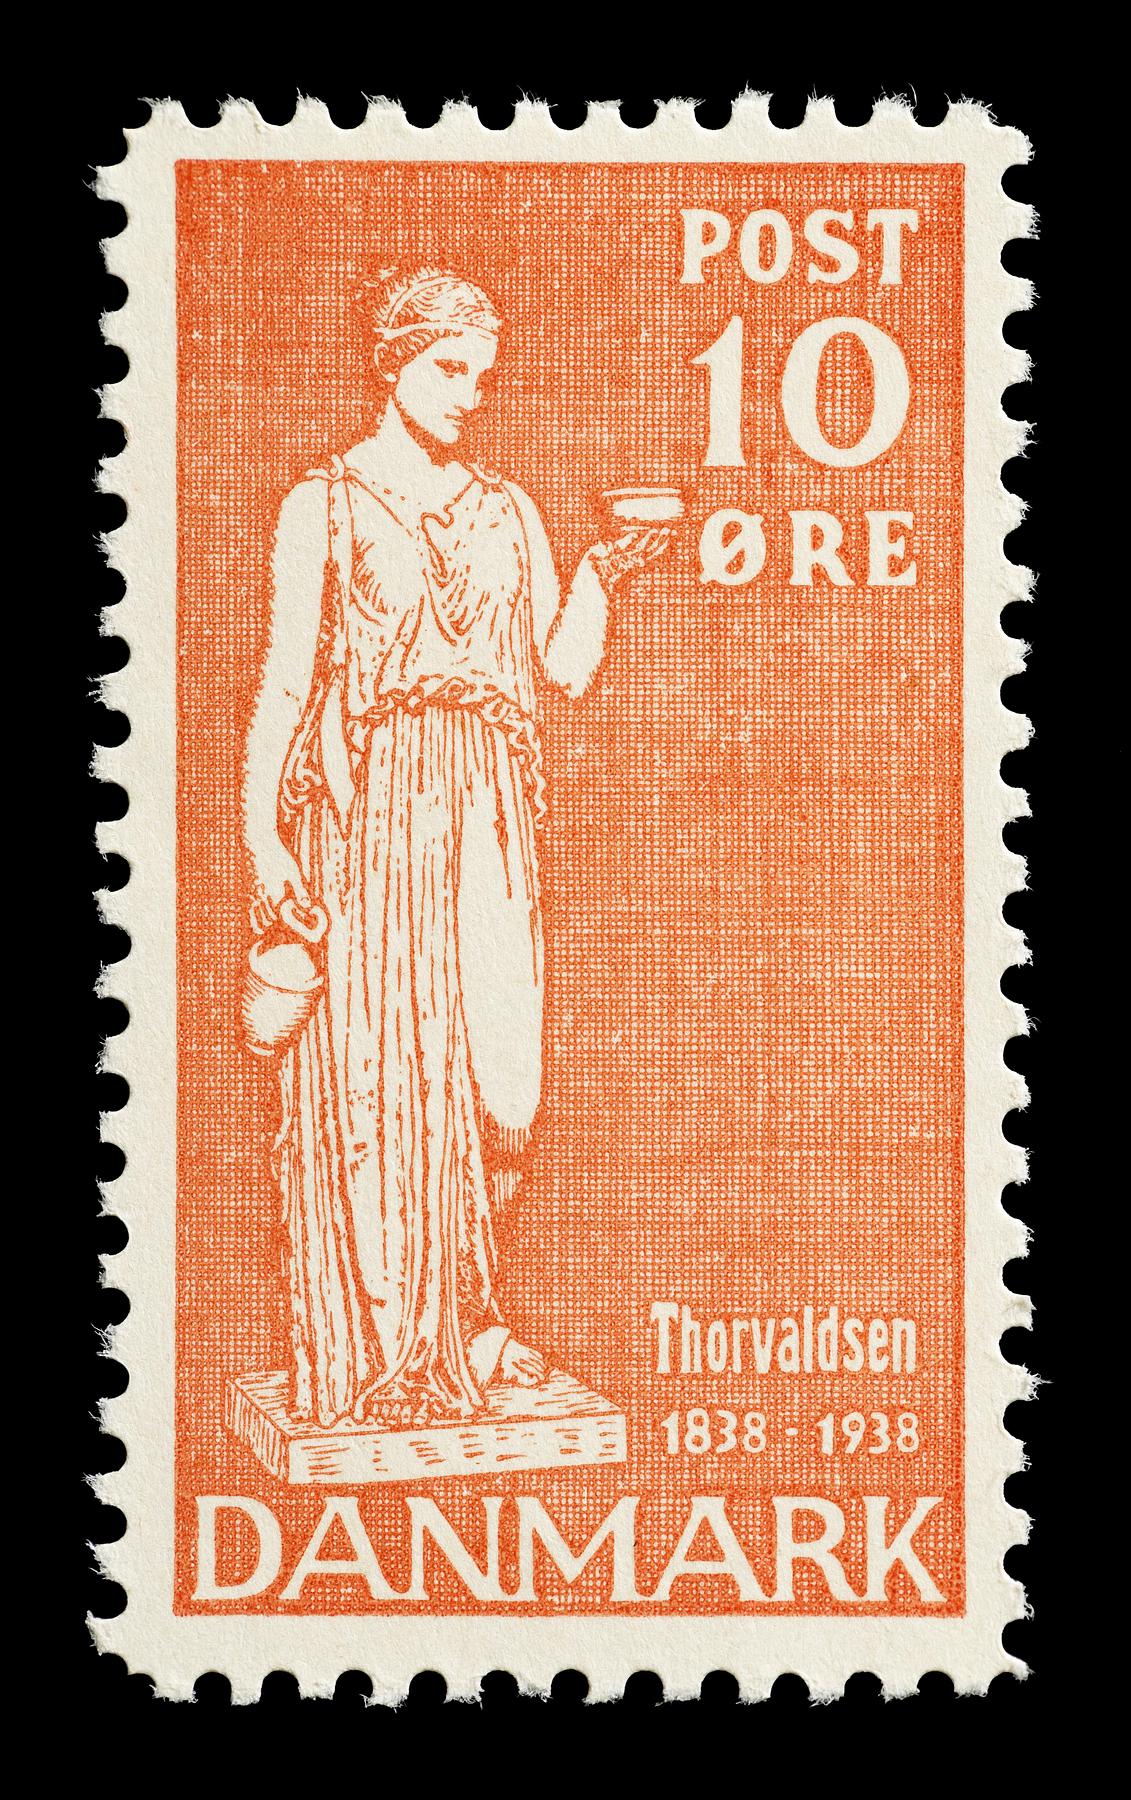 Prøvetryk af udkast til et dansk frimærke med Thorvaldsens Hebe, E2341,16